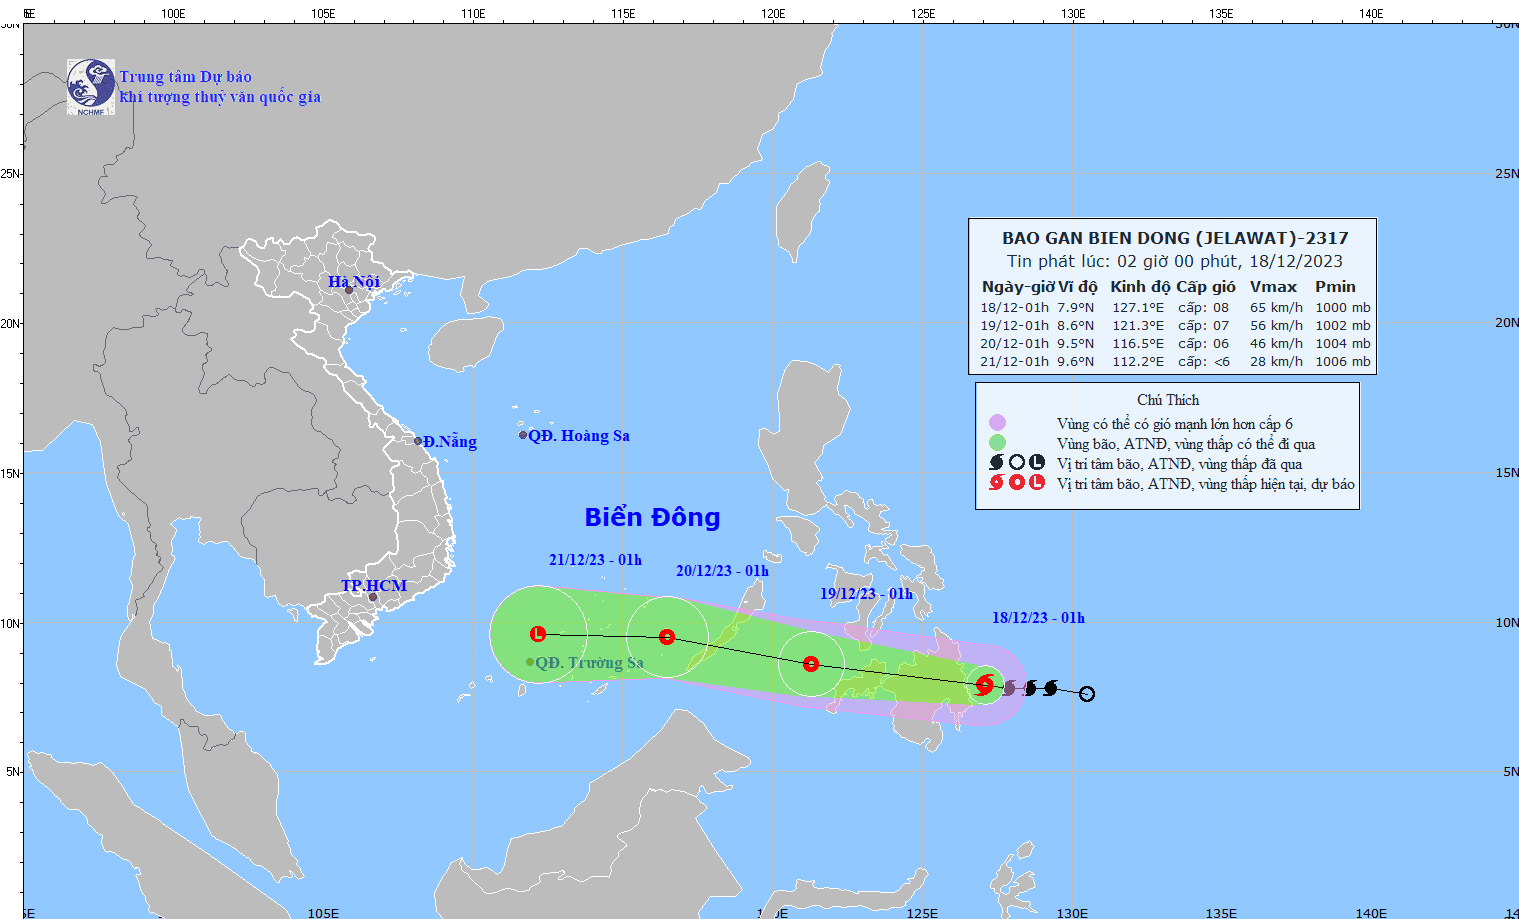 Dự báo diễn biến bão Jelawat: Khả năng vào Biển Đông; gió mạnh dần, giật cấp 8, sóng biển cao 2-4m, biển động